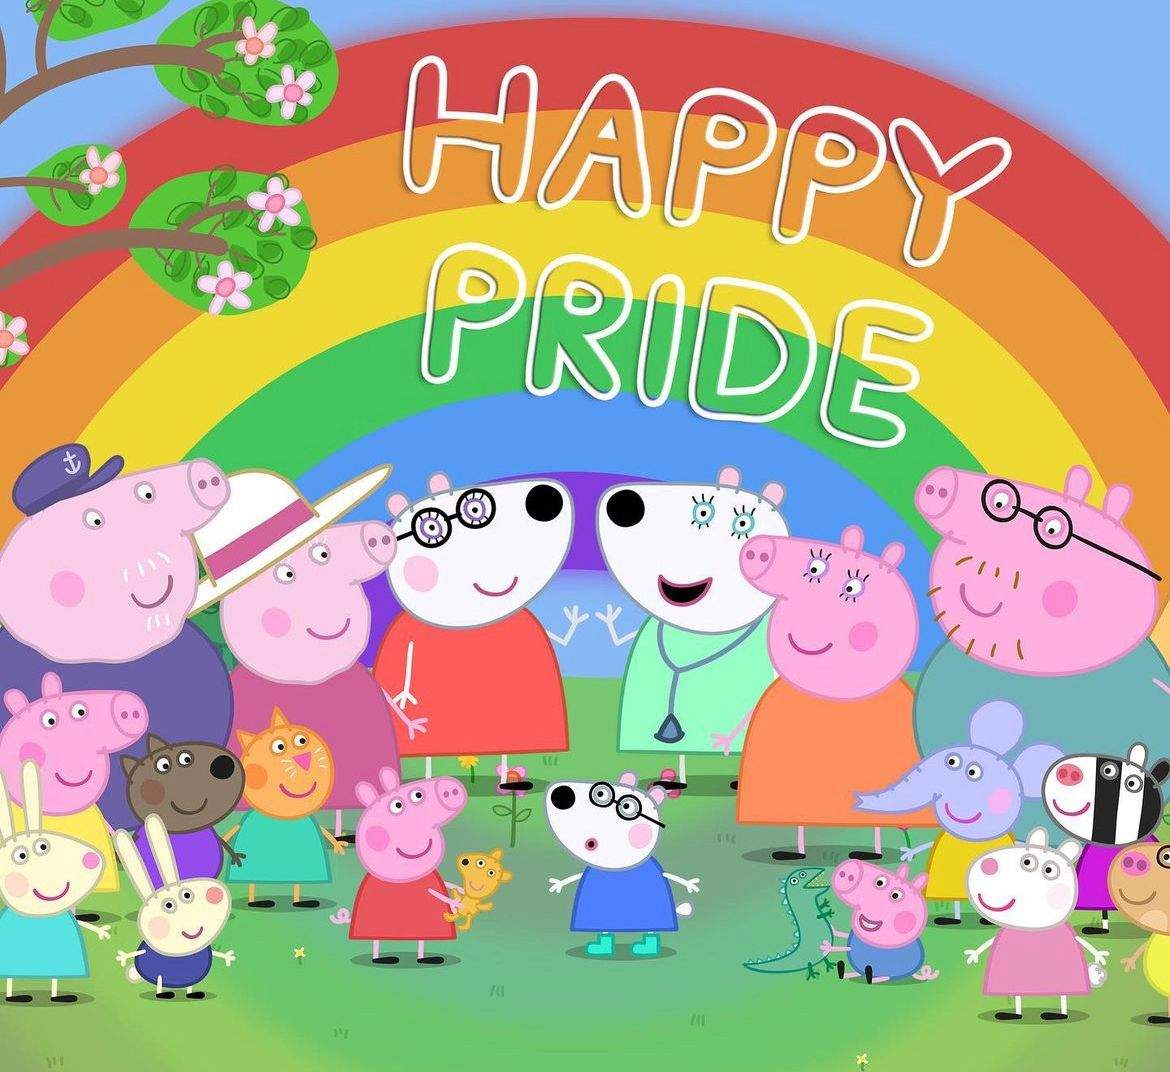 Desenho Peppa Pig celebra Mês do Orgulho LGBT e recebe críticas - Cidades -  R7 Folha Vitória